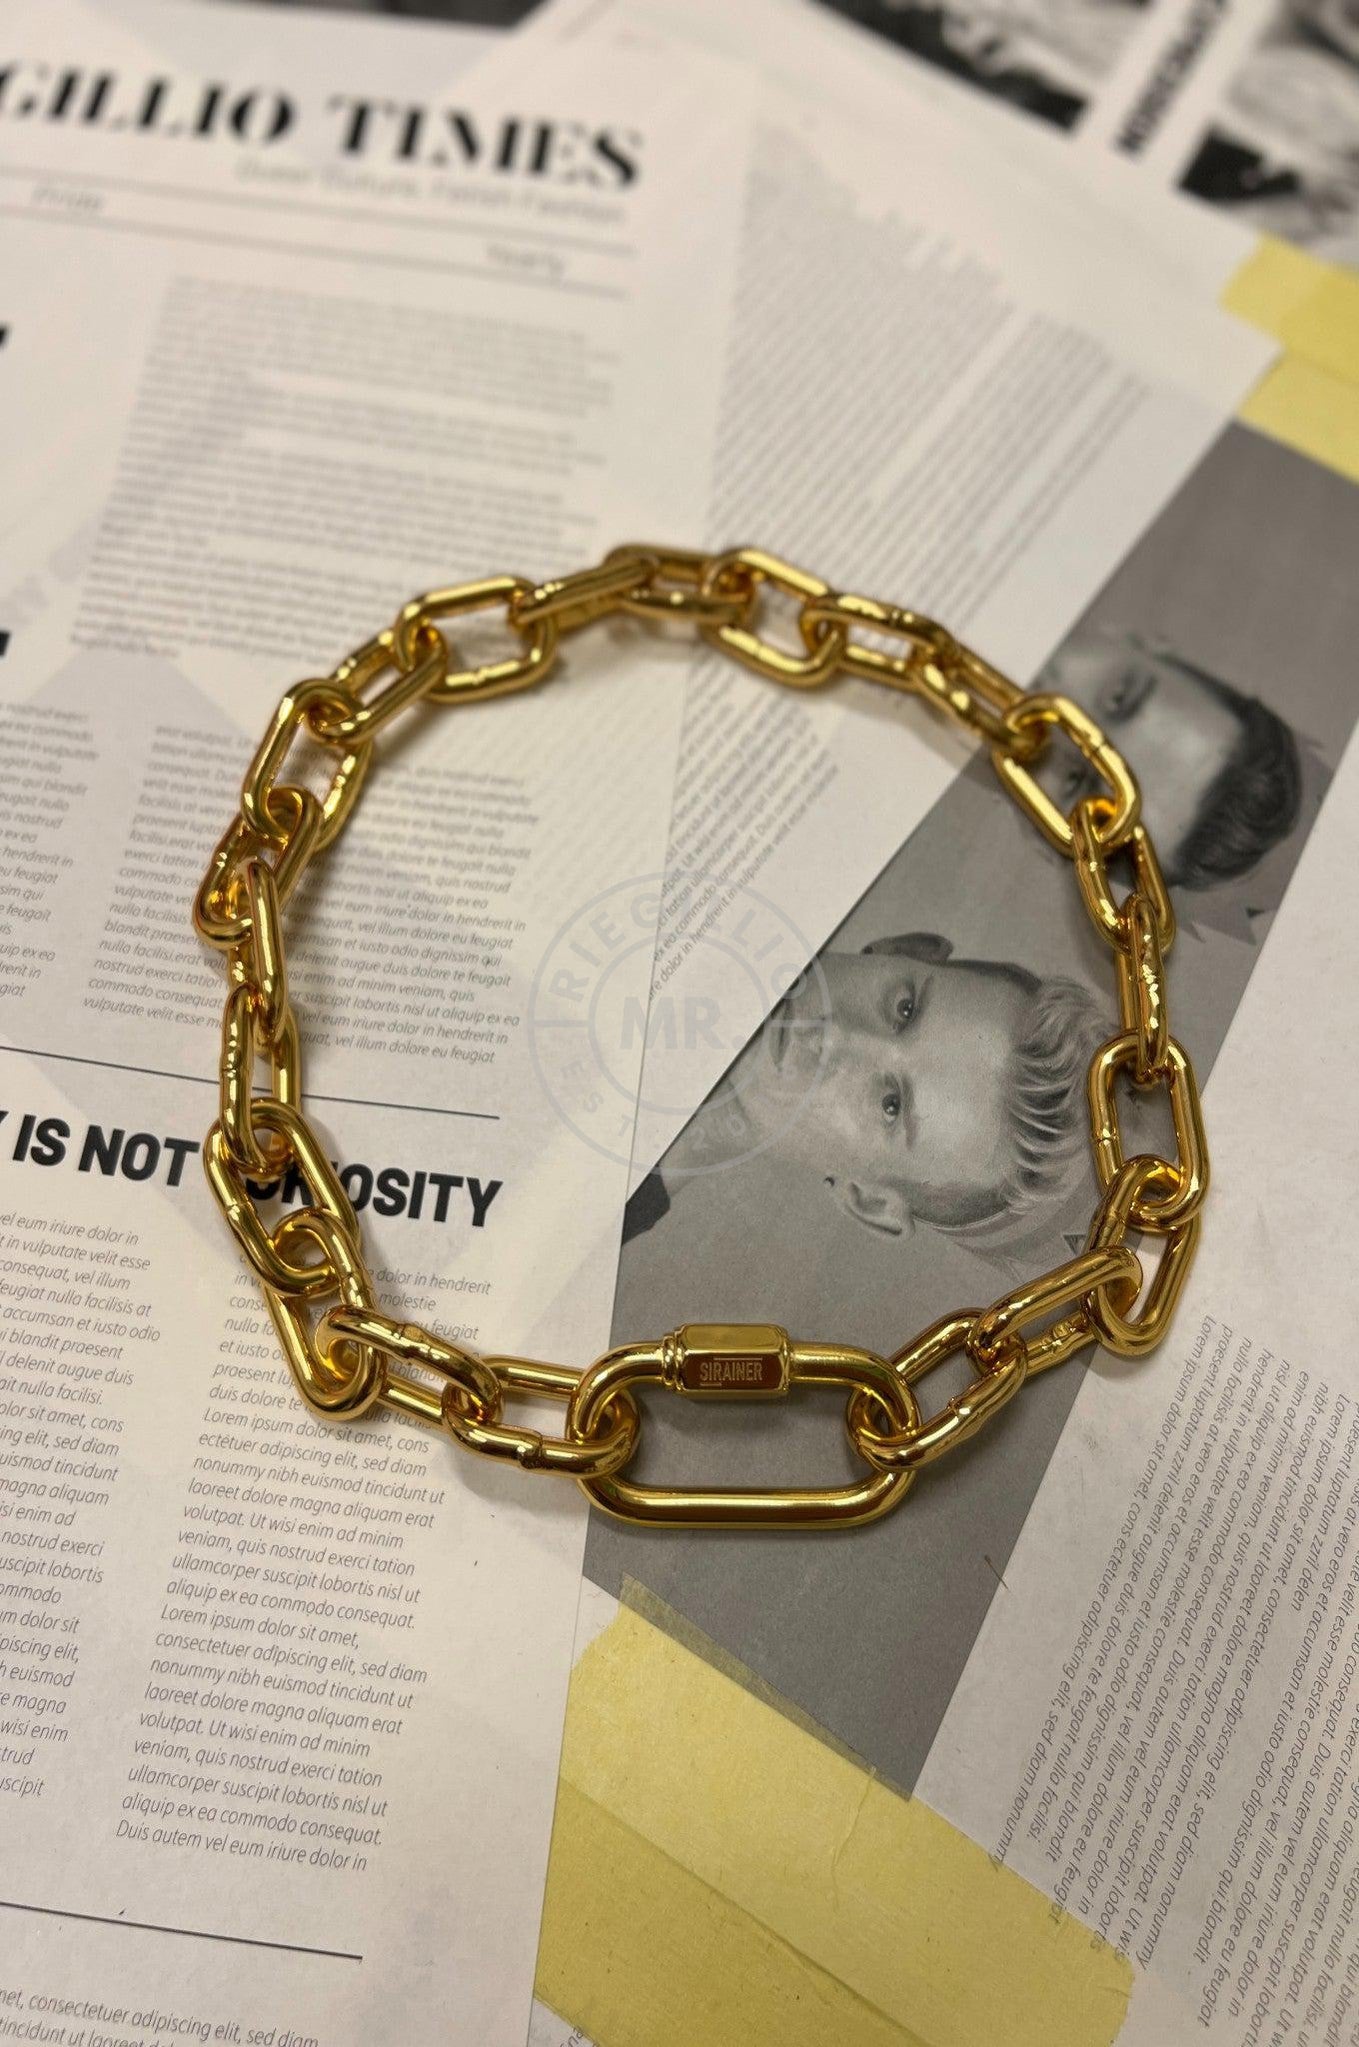 Chain Collar - Gold at MR. Riegillio